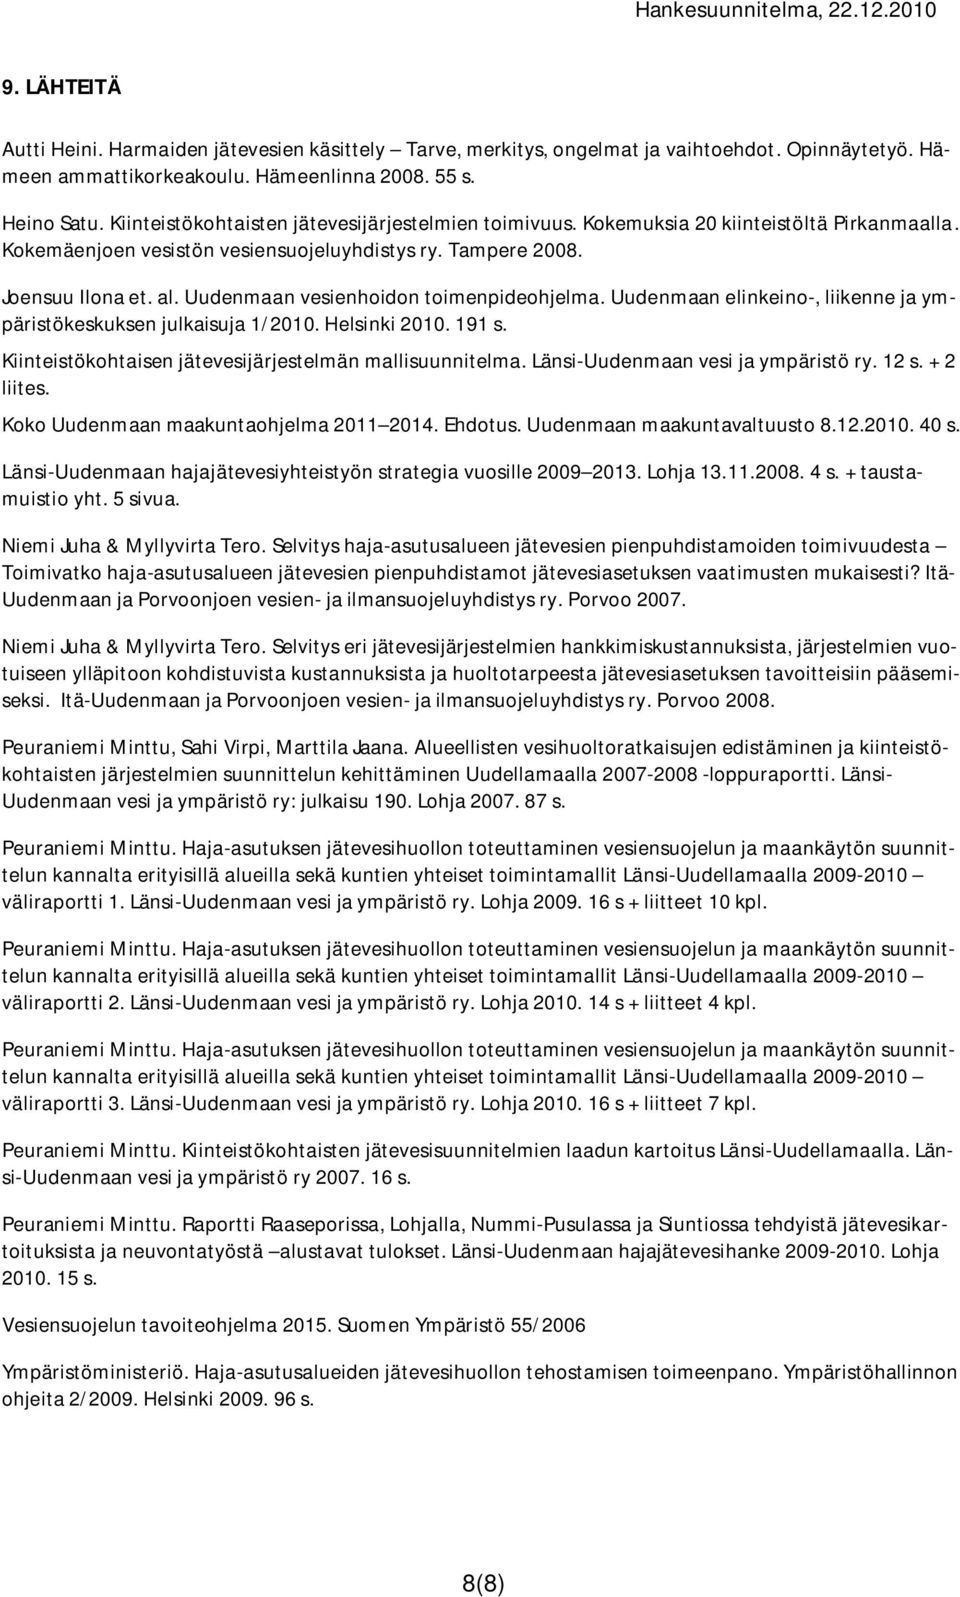 Uudenmaan vesienhoidon toimenpideohjelma. Uudenmaan elinkeino-, liikenne ja ympäristökeskuksen julkaisuja 1/2010. Helsinki 2010. 191 s. Kiinteistökohtaisen jätevesijärjestelmän mallisuunnitelma.